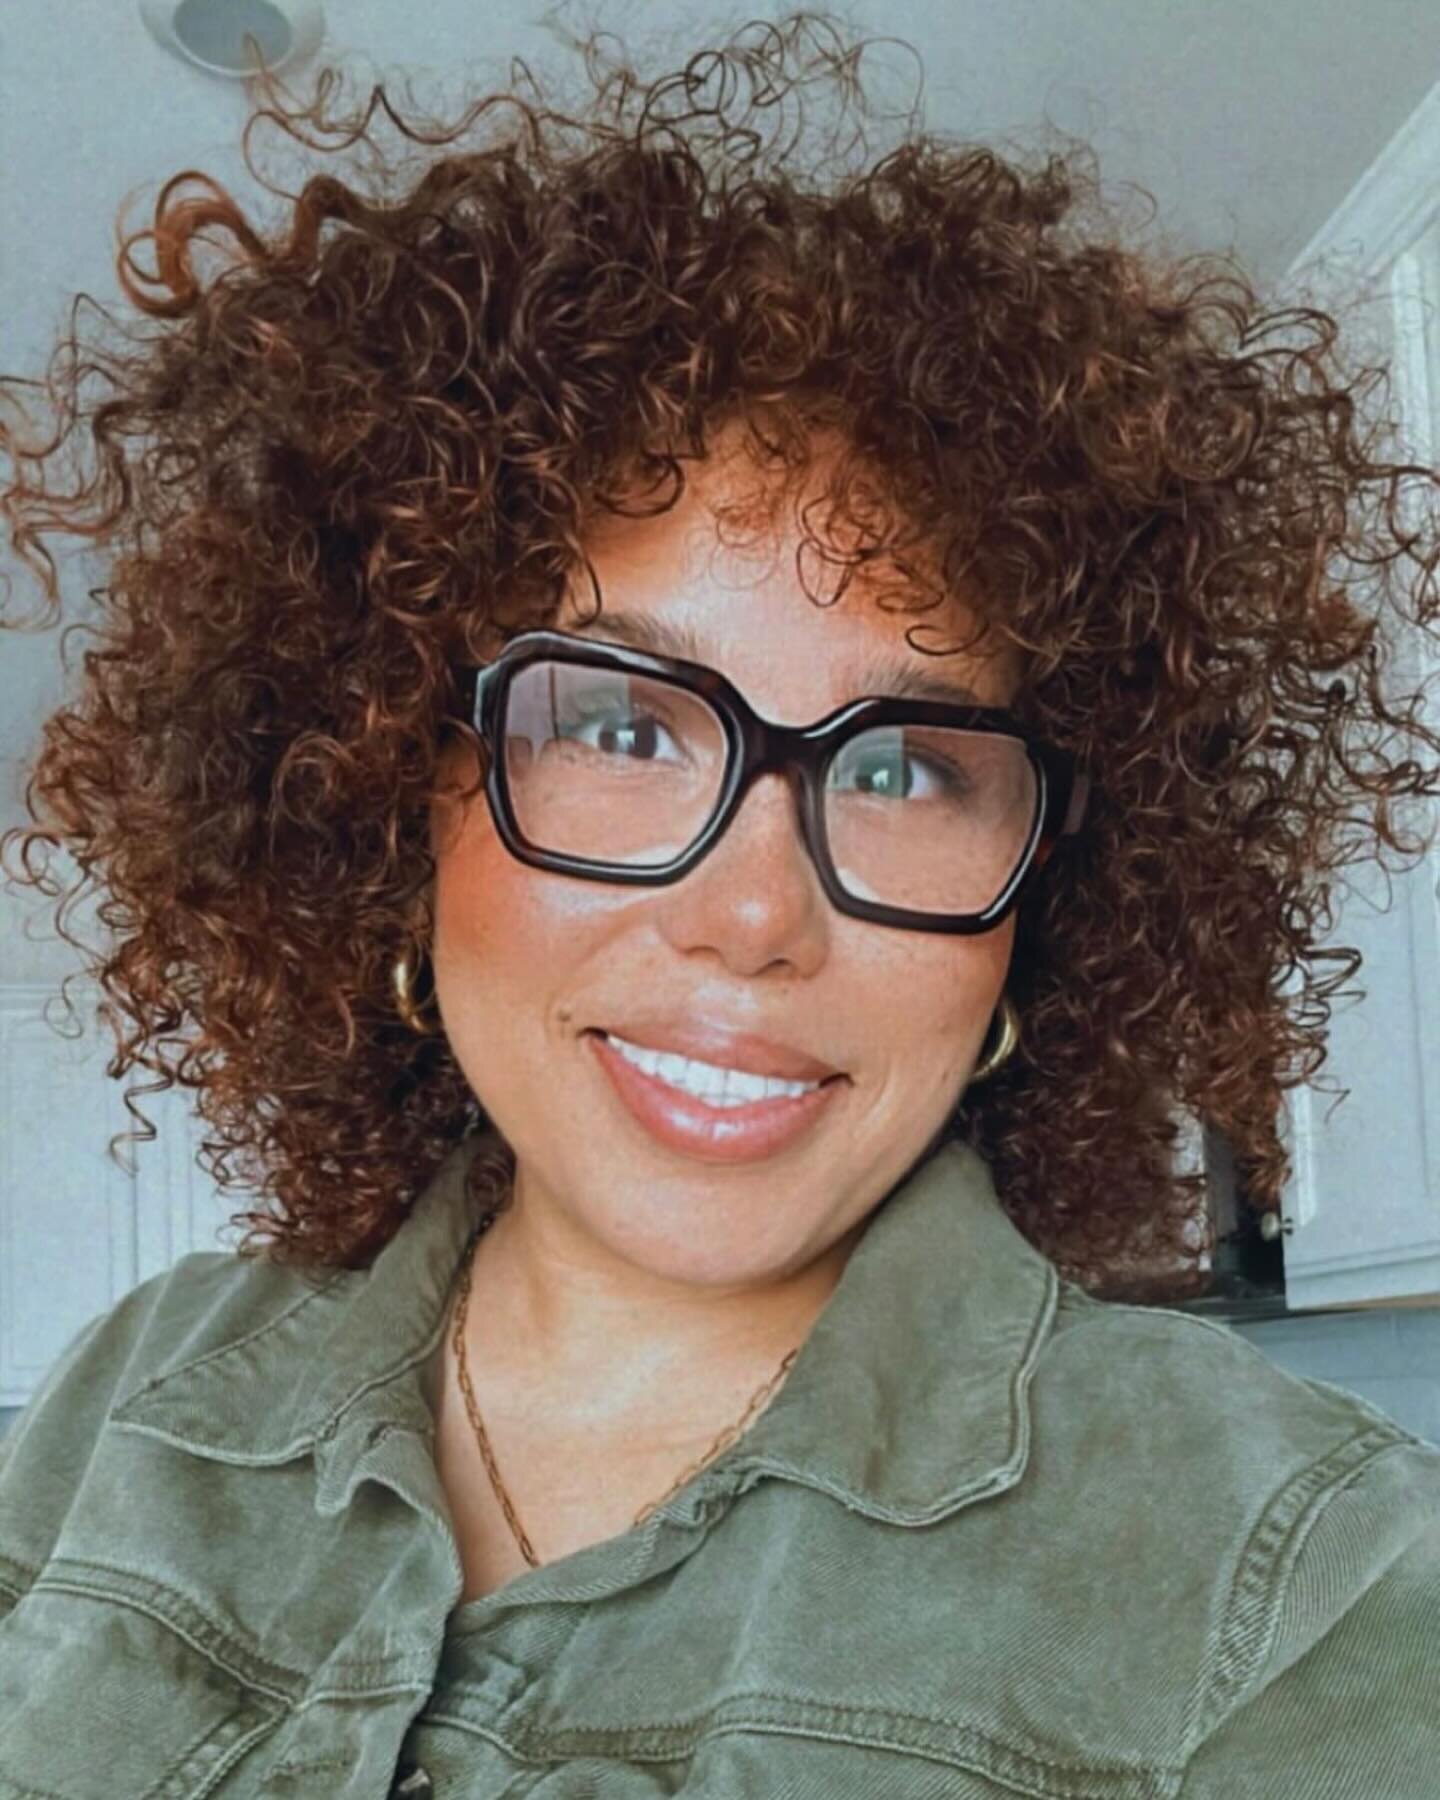 Hair appreciation post by @reginarosari0 Bios 

@andy.shag is a go to for curly cuts ✂️

#nashvillecurlyhair #curlyhaircit #nashvillestykist #hairstorystudio #hairstorynewwash #curlyspecialist